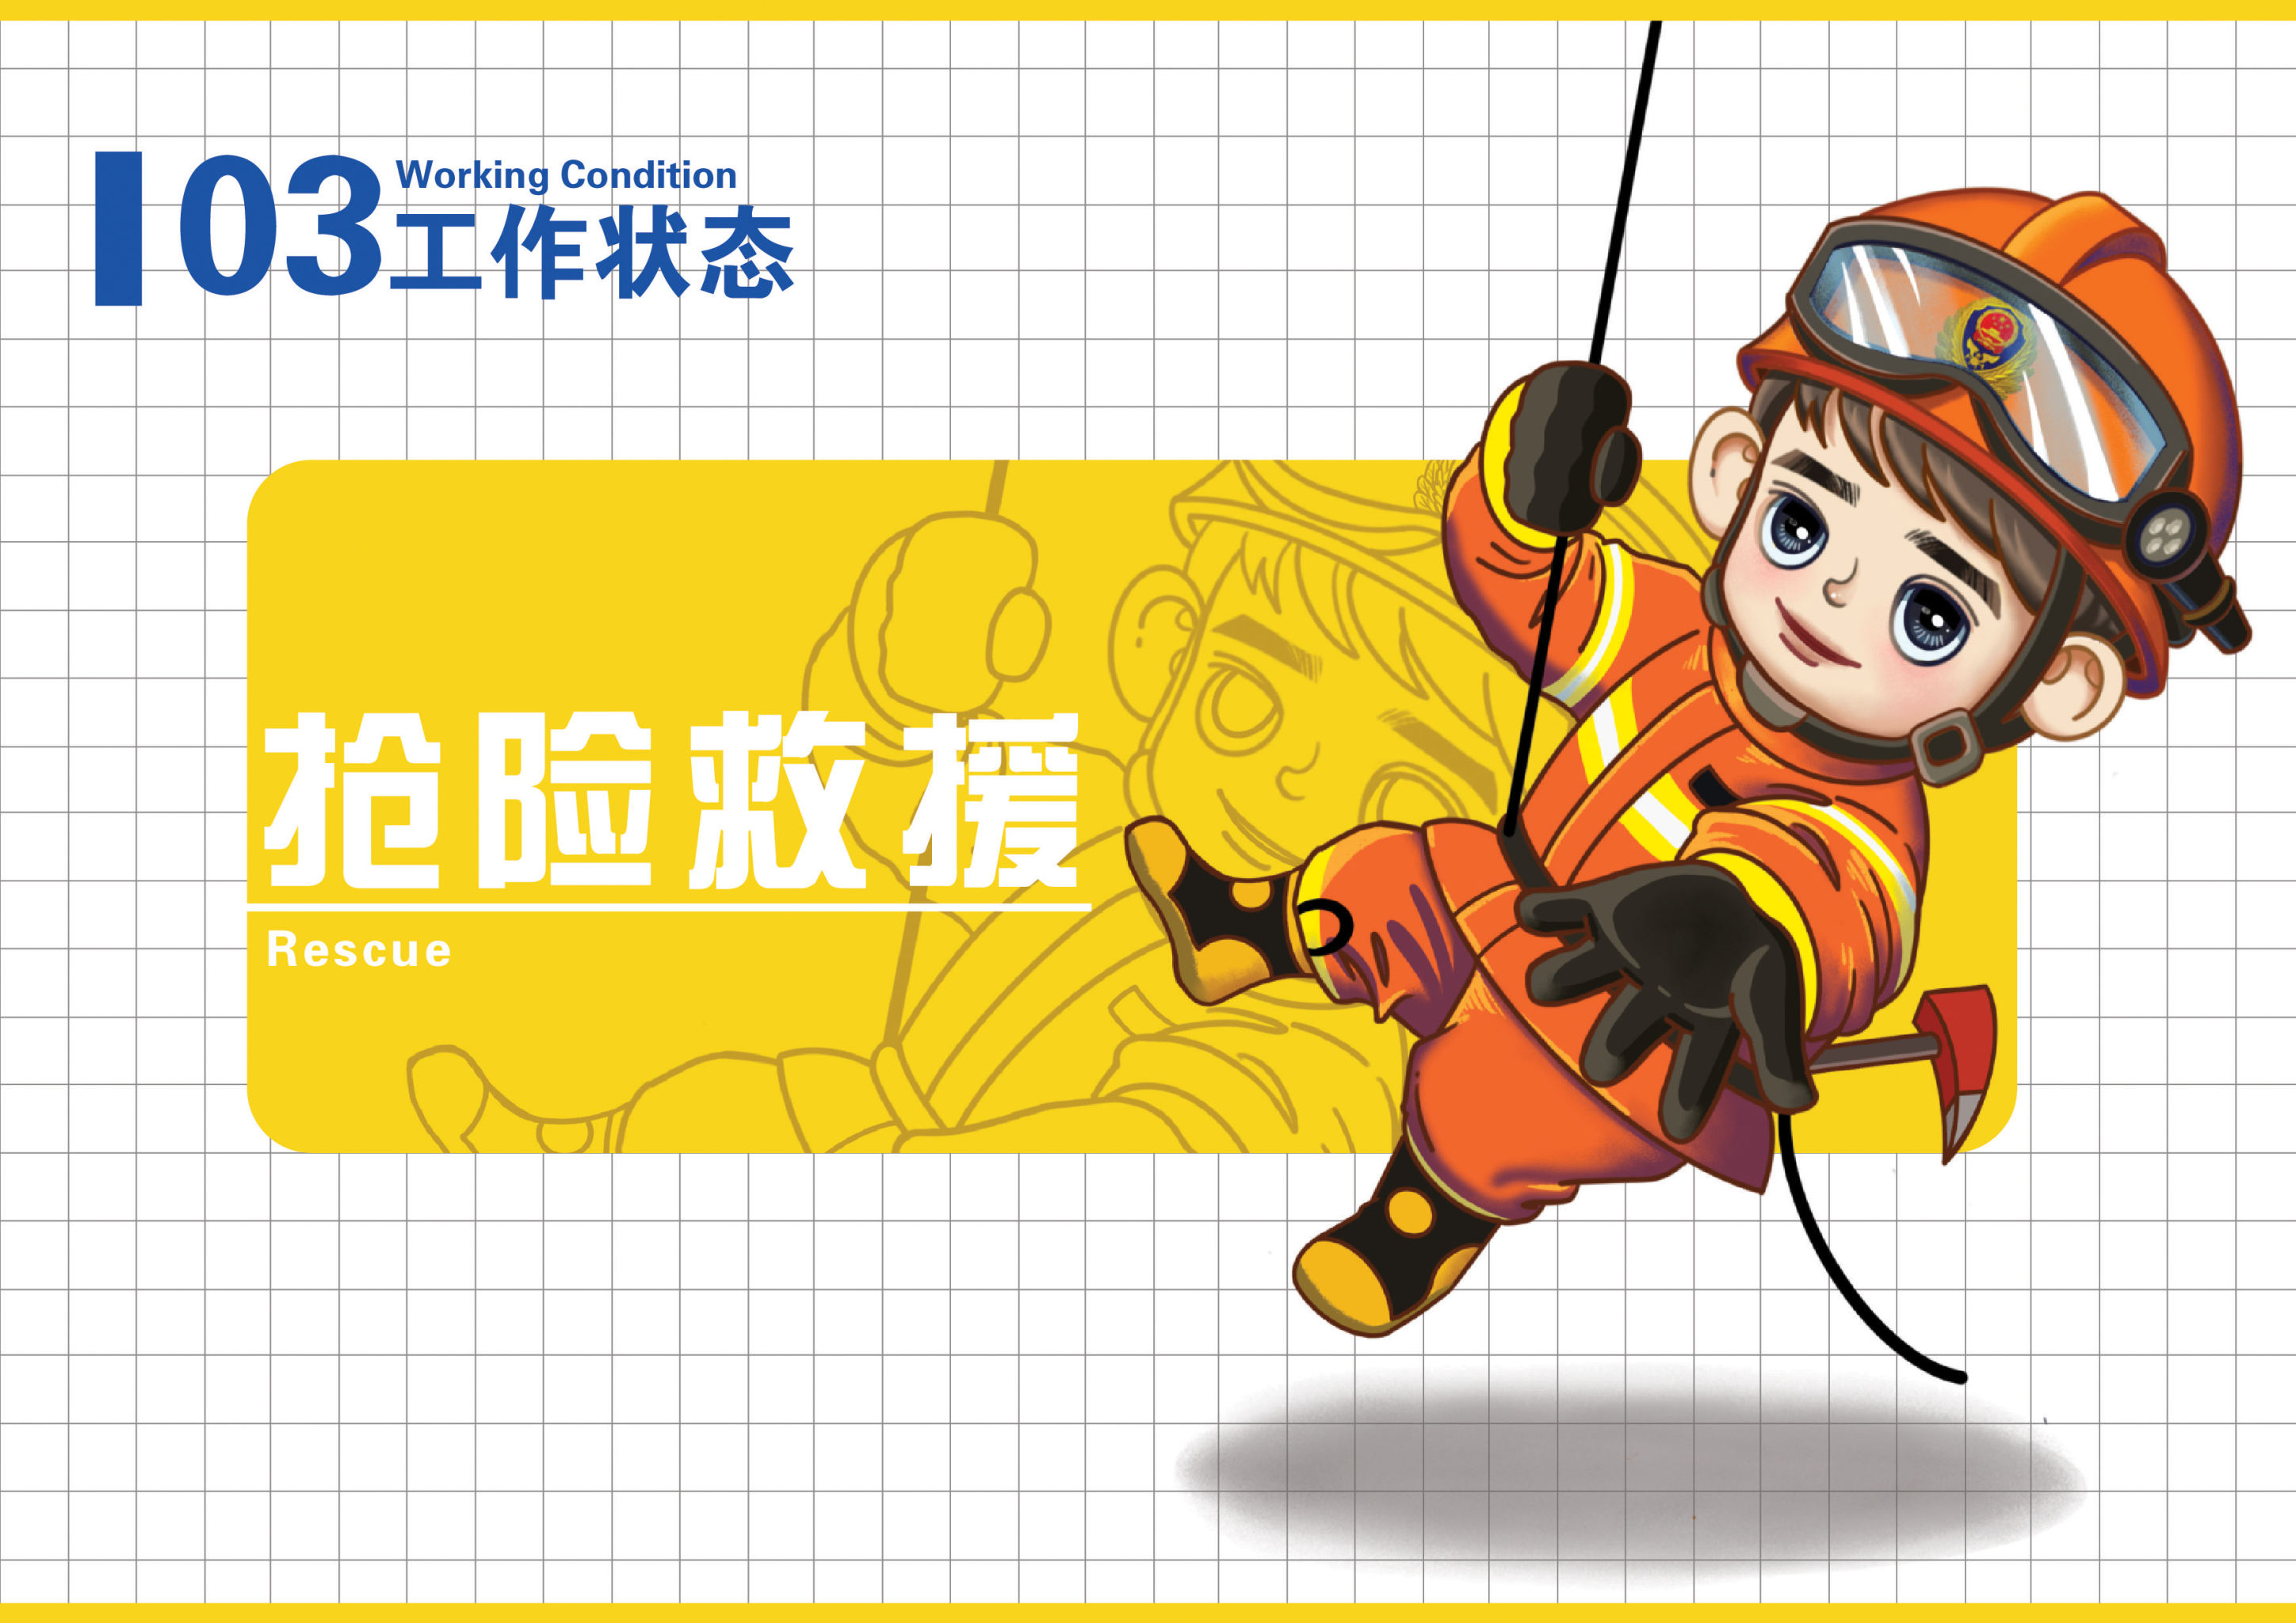 中国消防员卡通形象设计——消消 